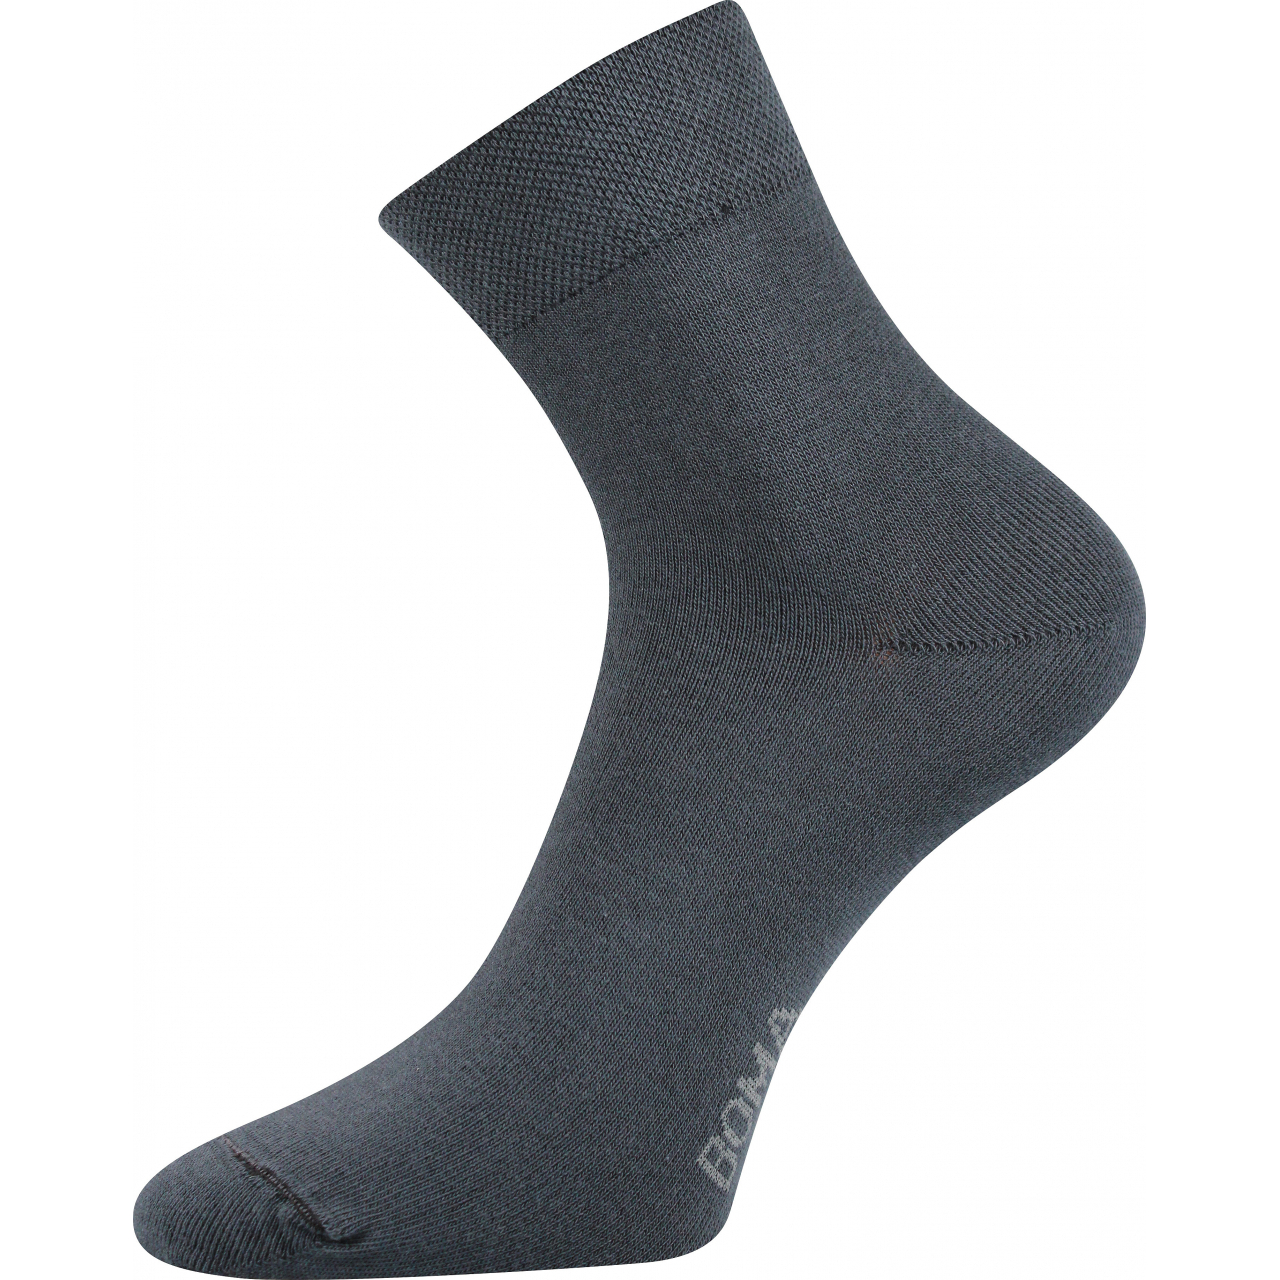 Ponožky unisex klasické Boma Zazr - tmavě šedé, 39-42